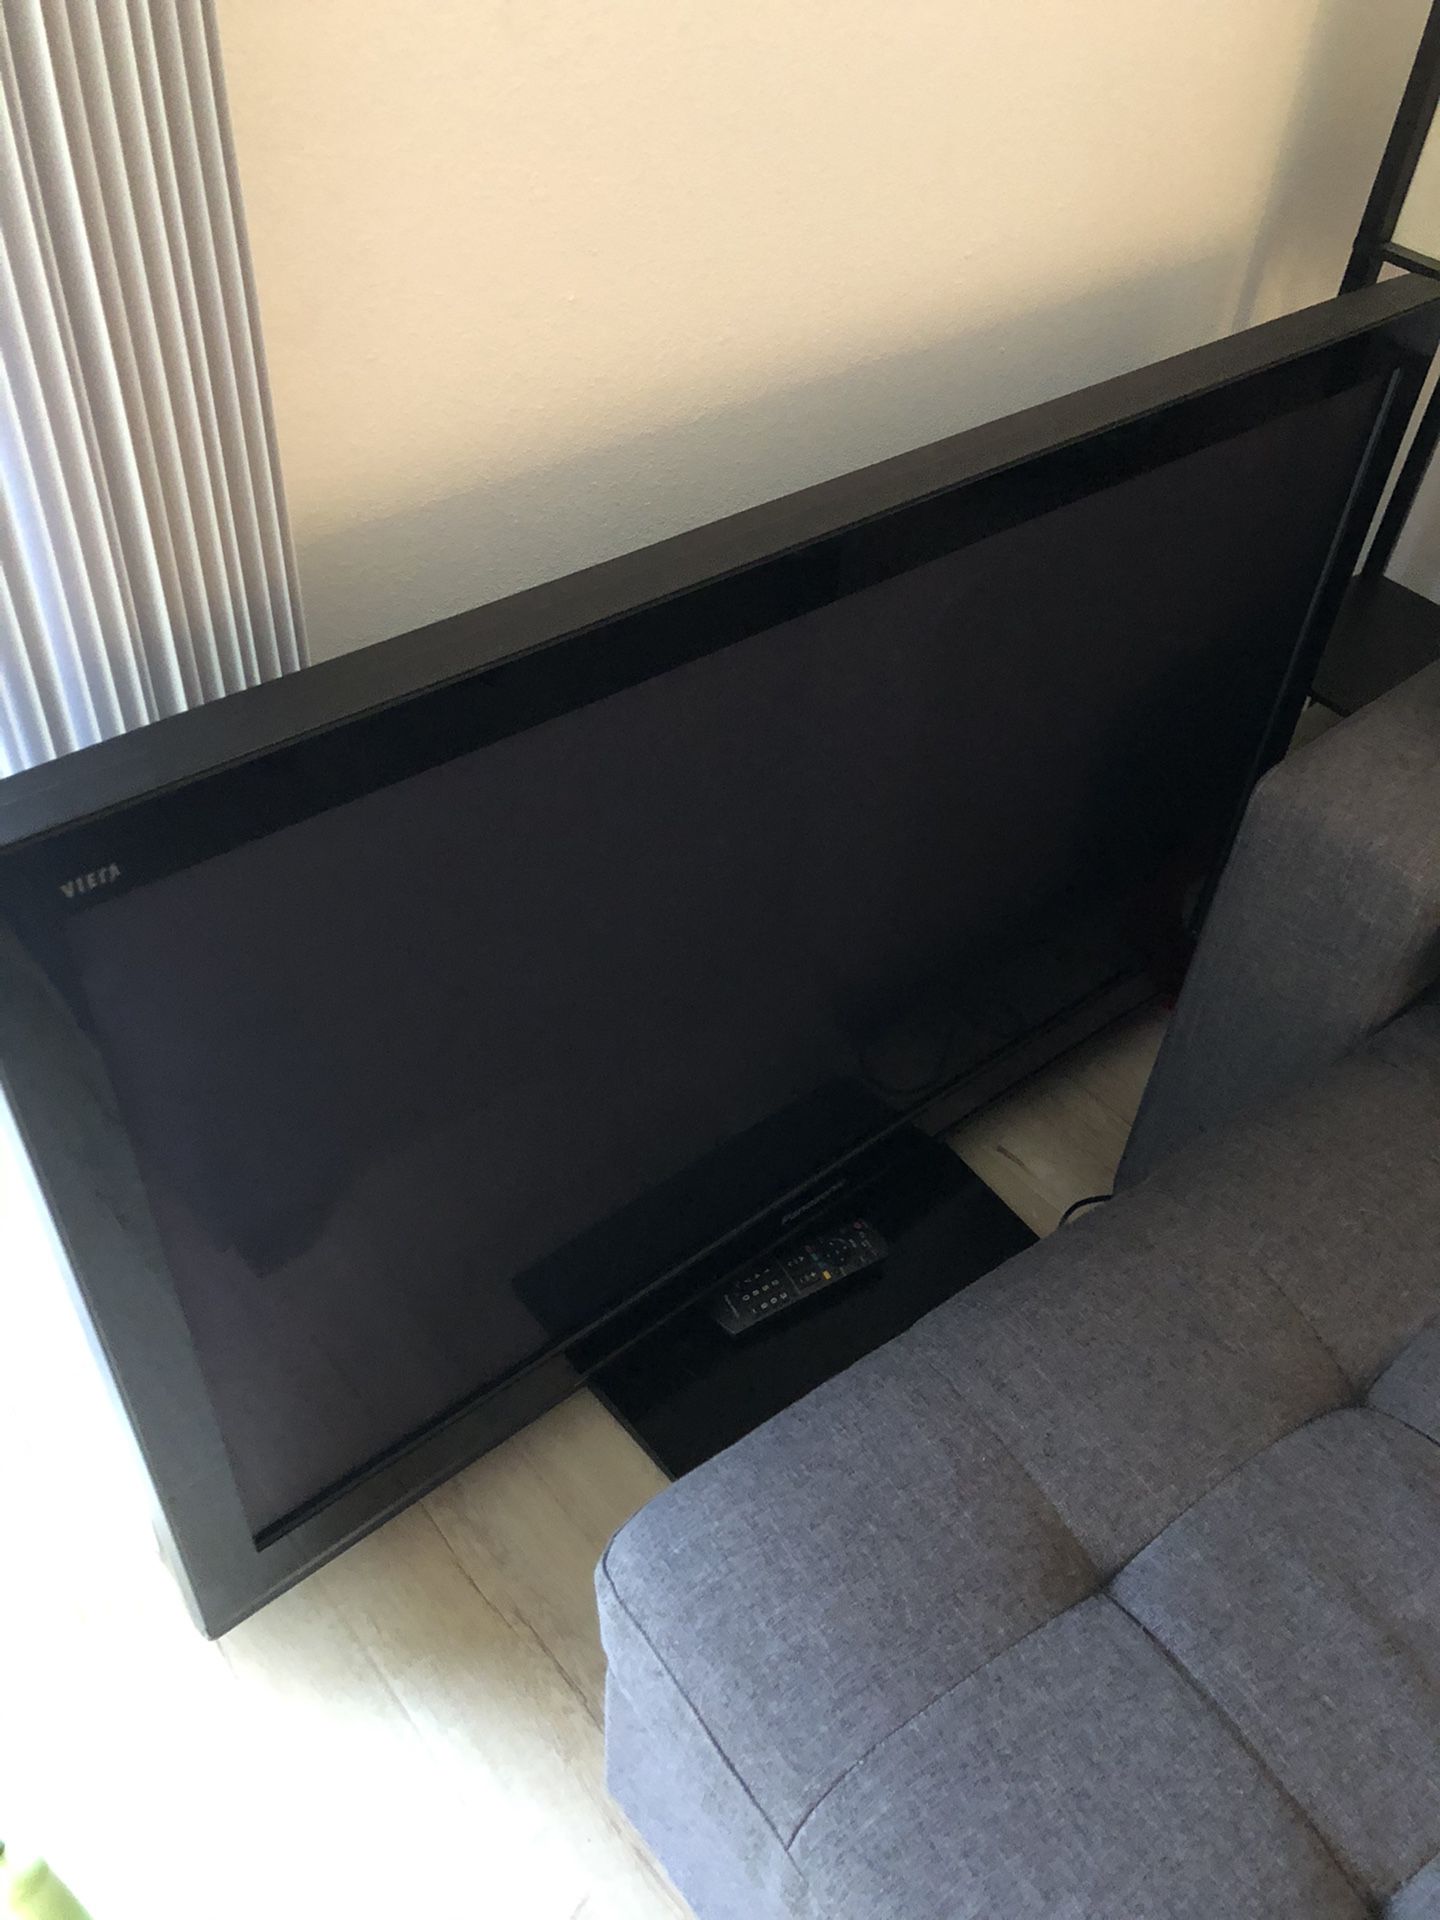 48 inch Panasonic Vieja TV